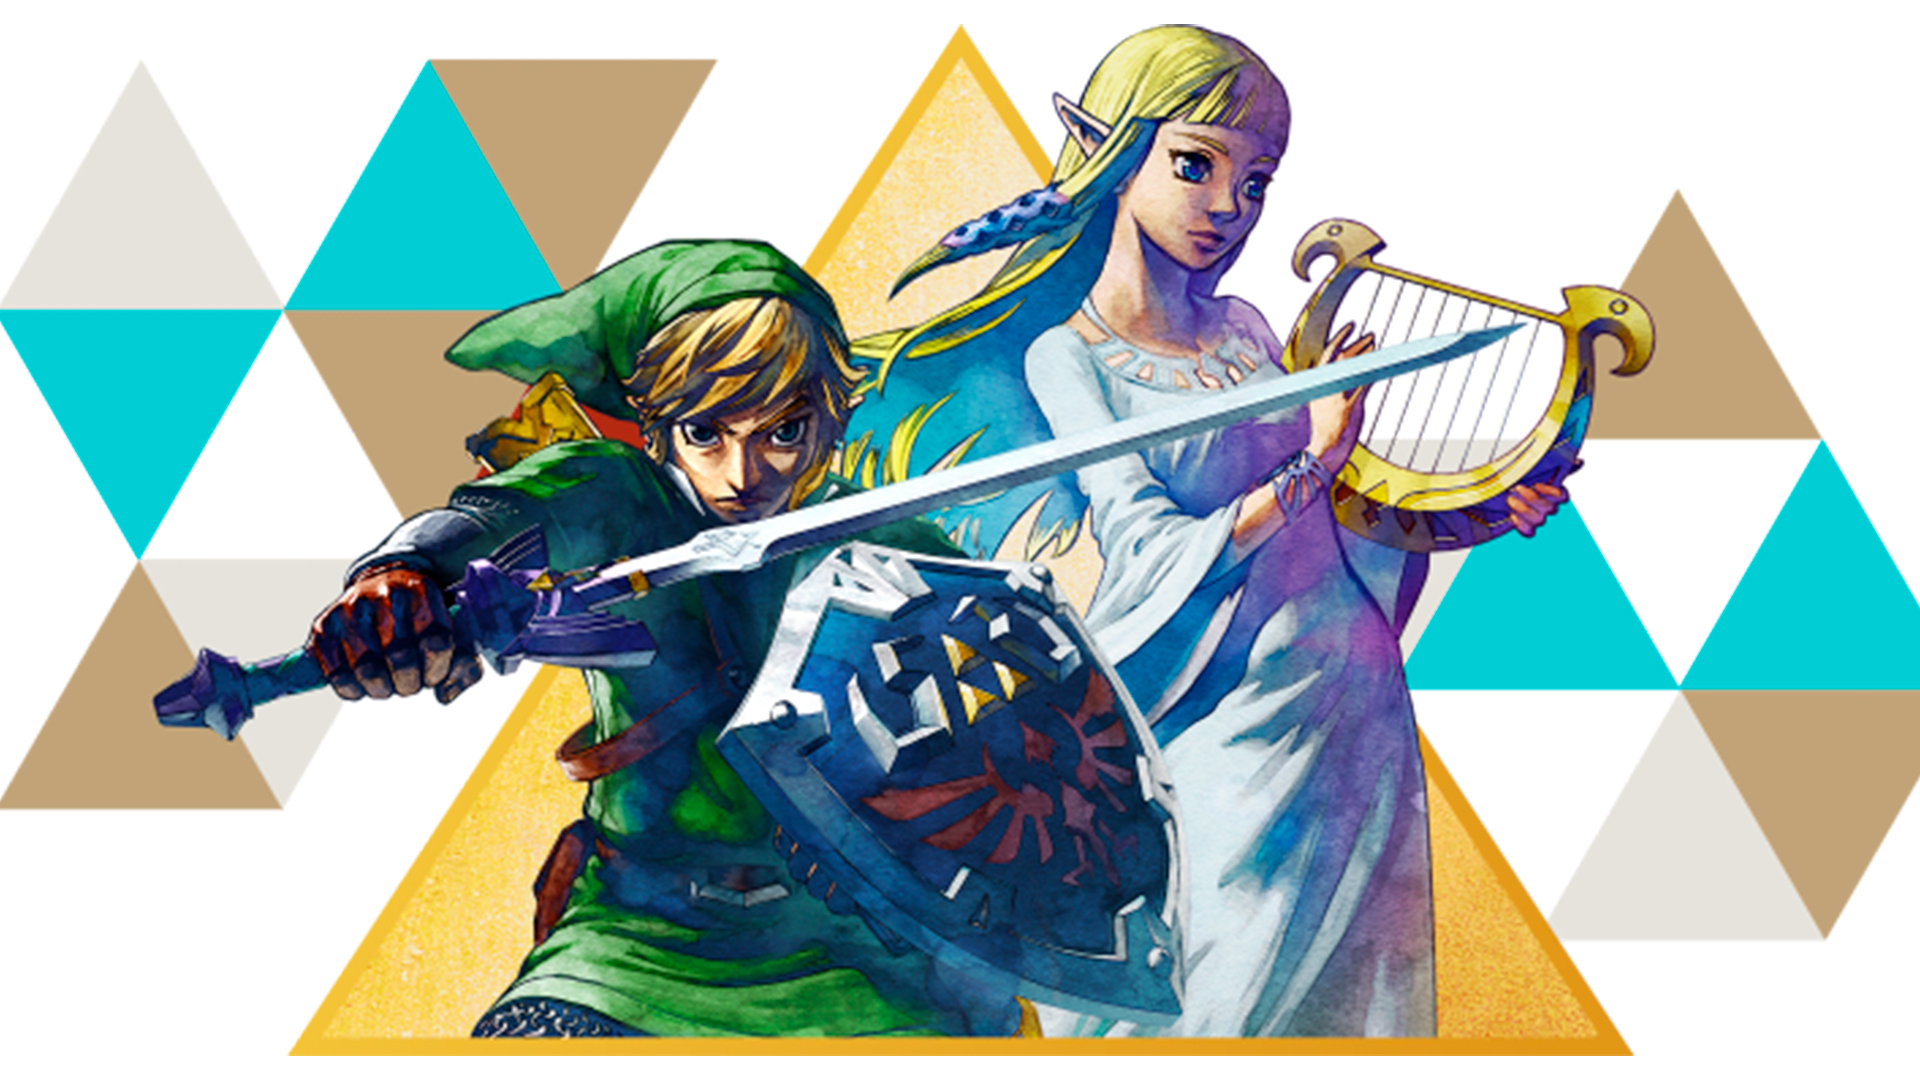 Em parceria com a Sony, Nintendo anuncia live-action de Zelda